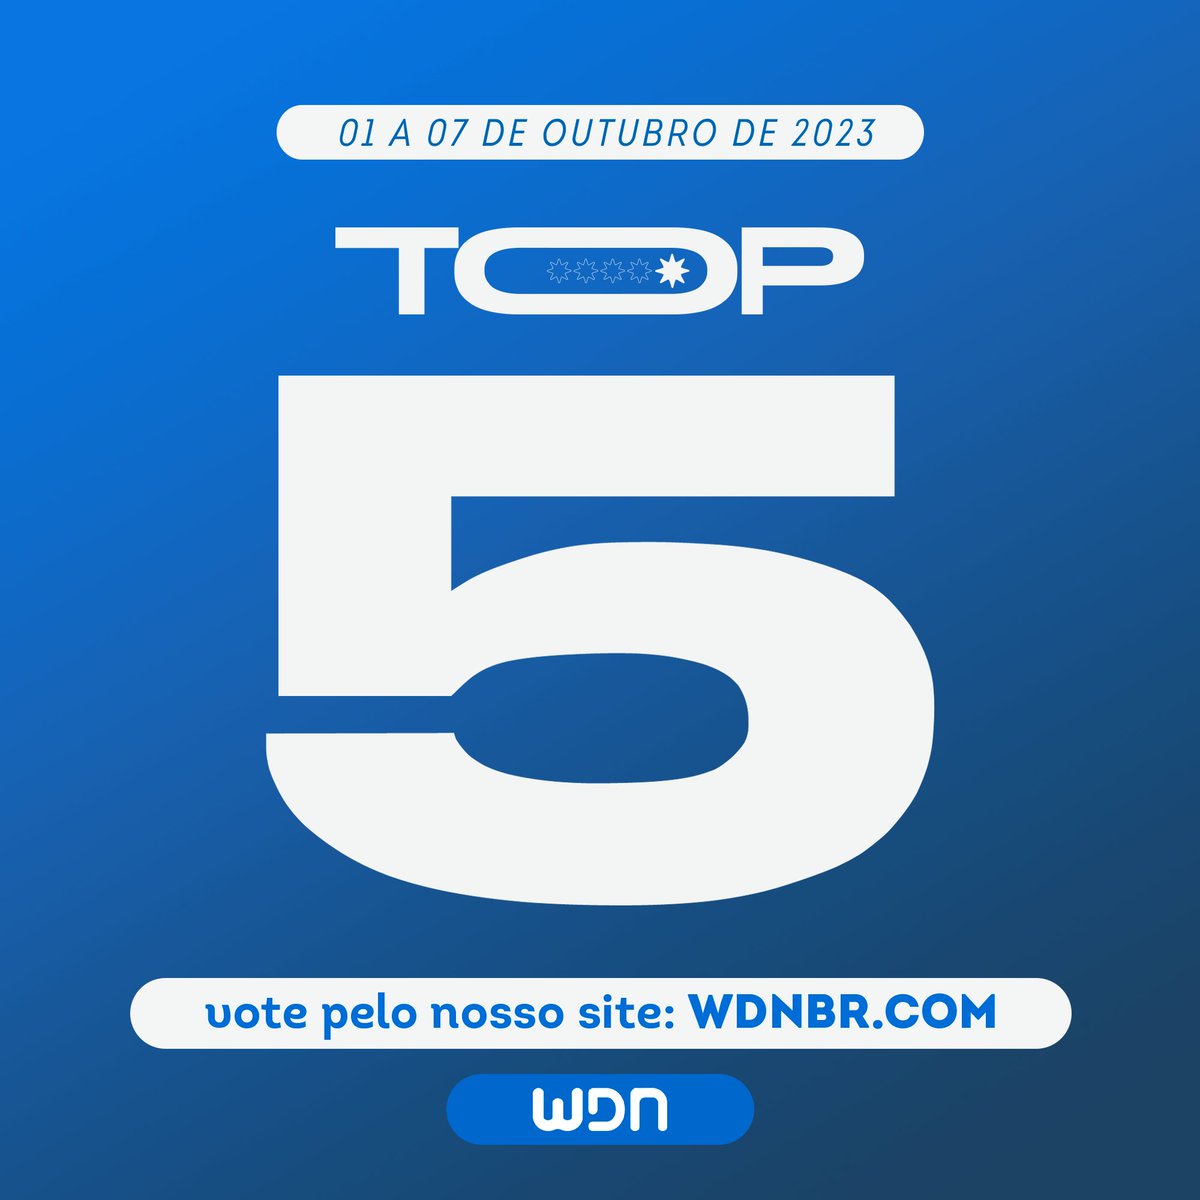 WDN - World Dubbing News on X: ✨ As Quintas de Dublagem estão